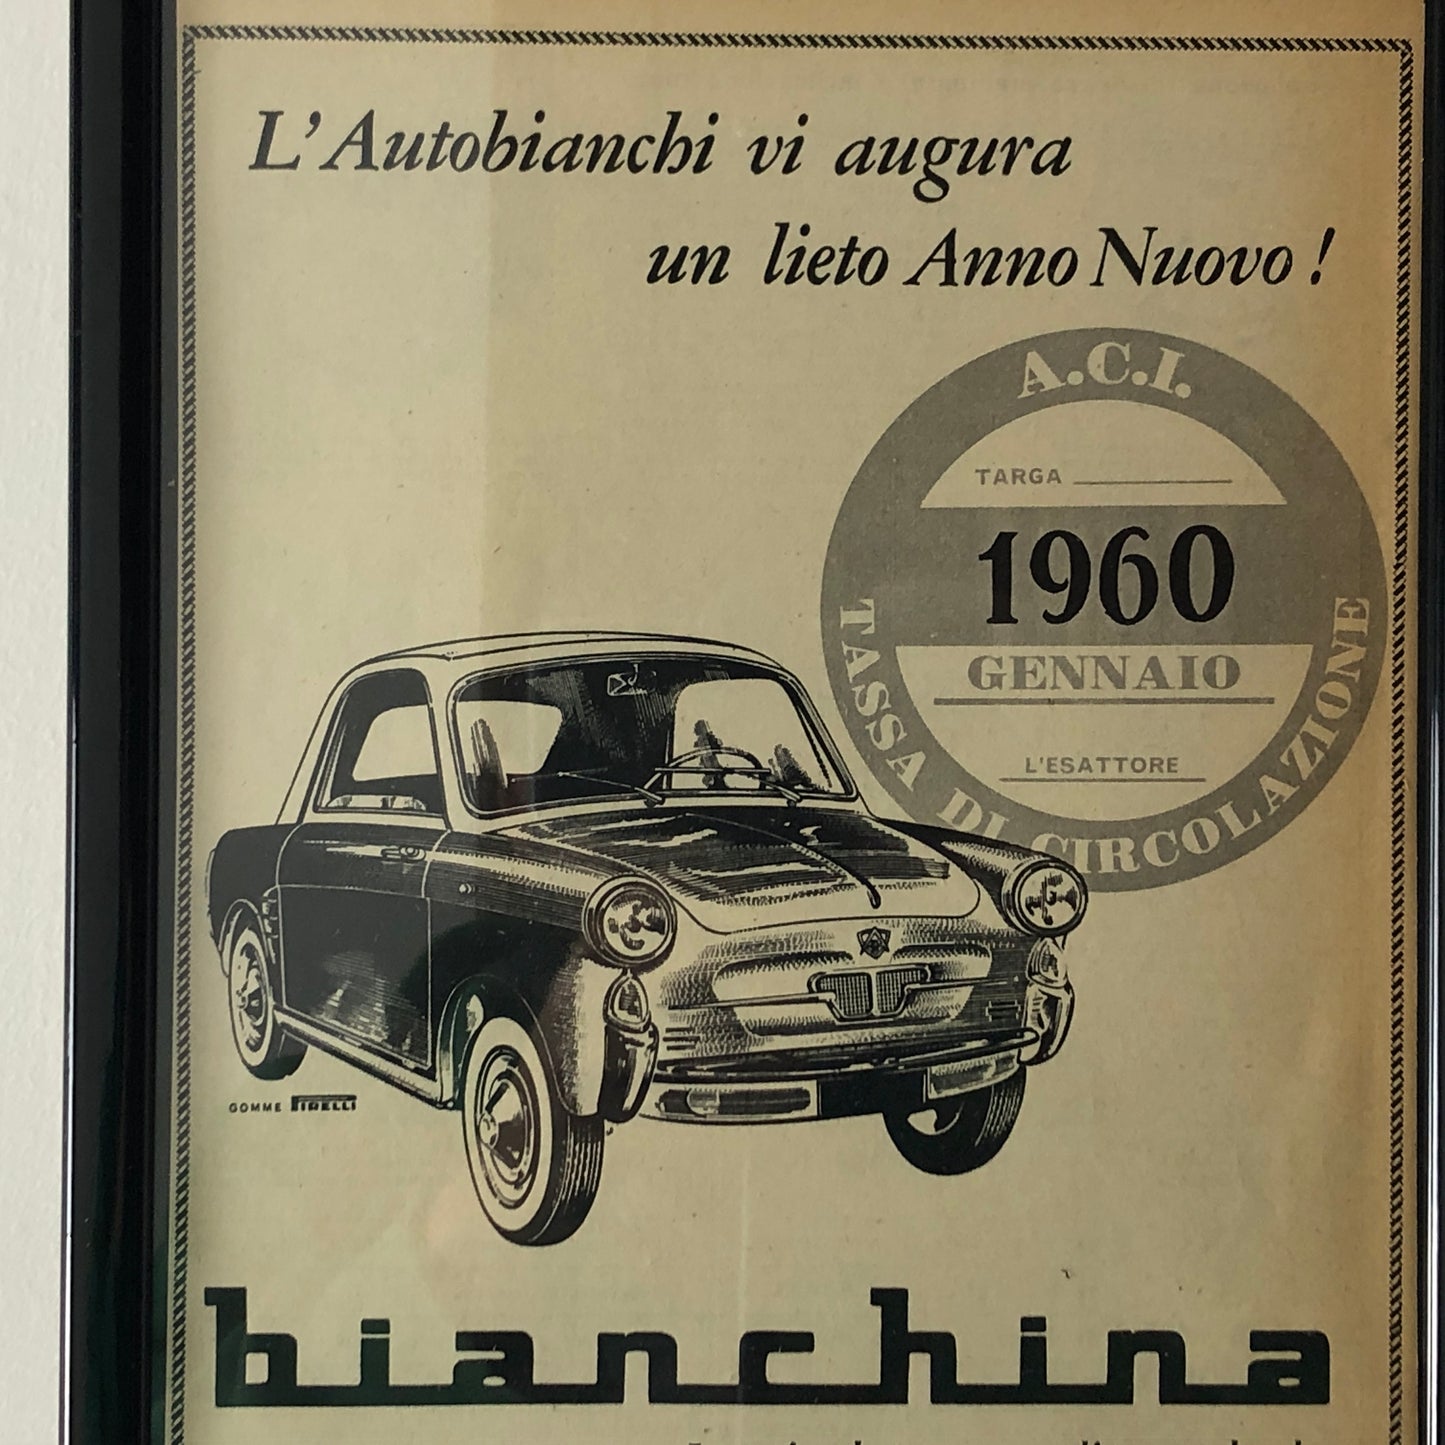 Autobianchi, Pubblicità Lieto Anno Nuovo 1960 Autobianchi Bianchina